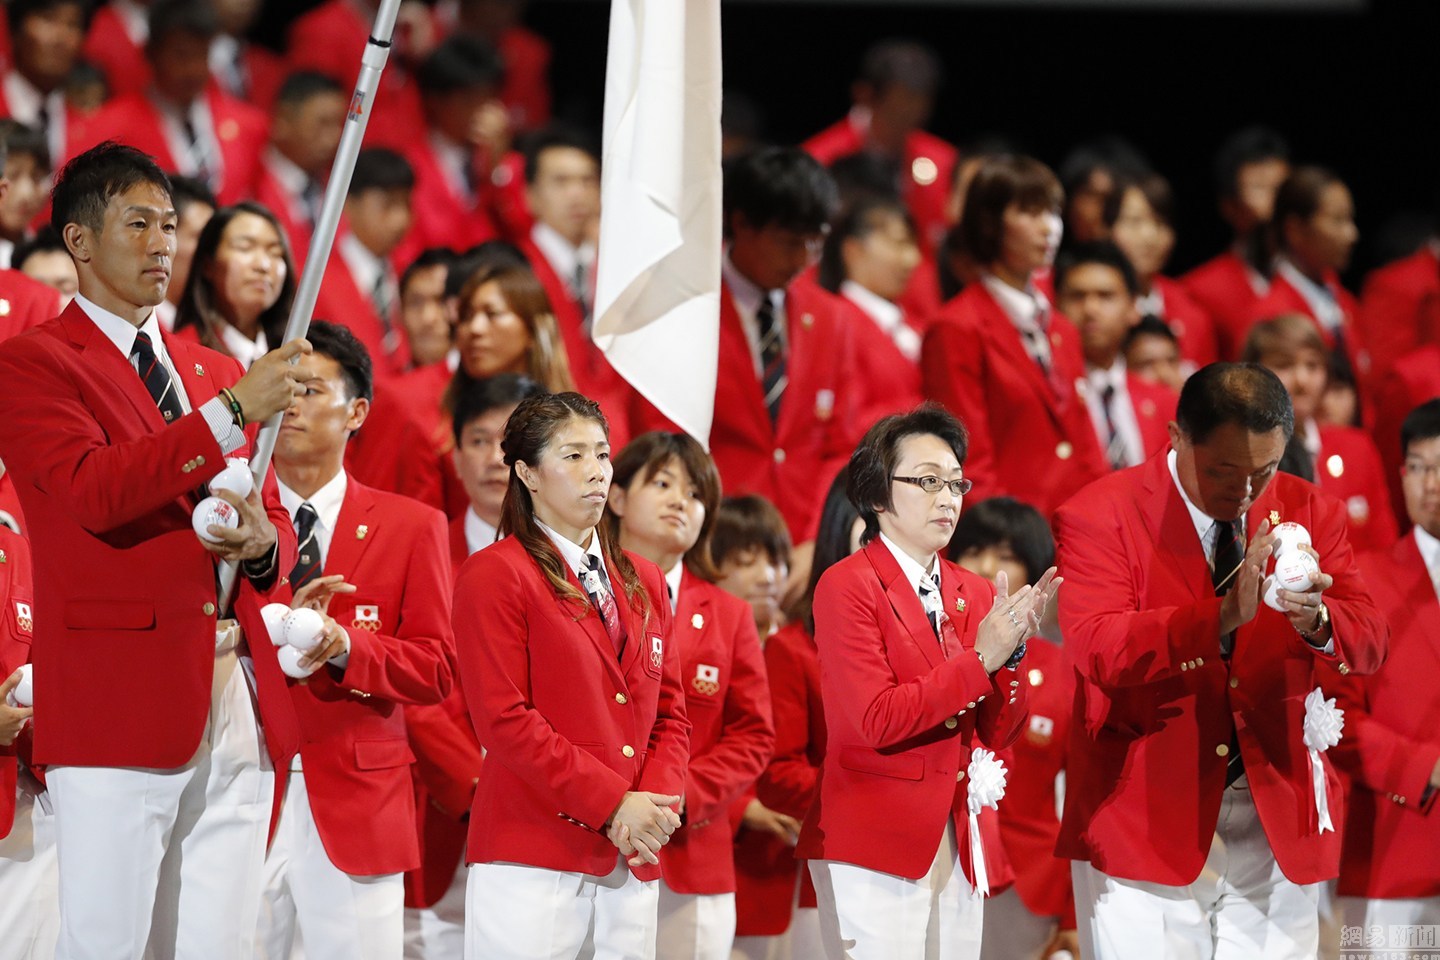 日本举办奥运出征仪式 运动员情绪高昂